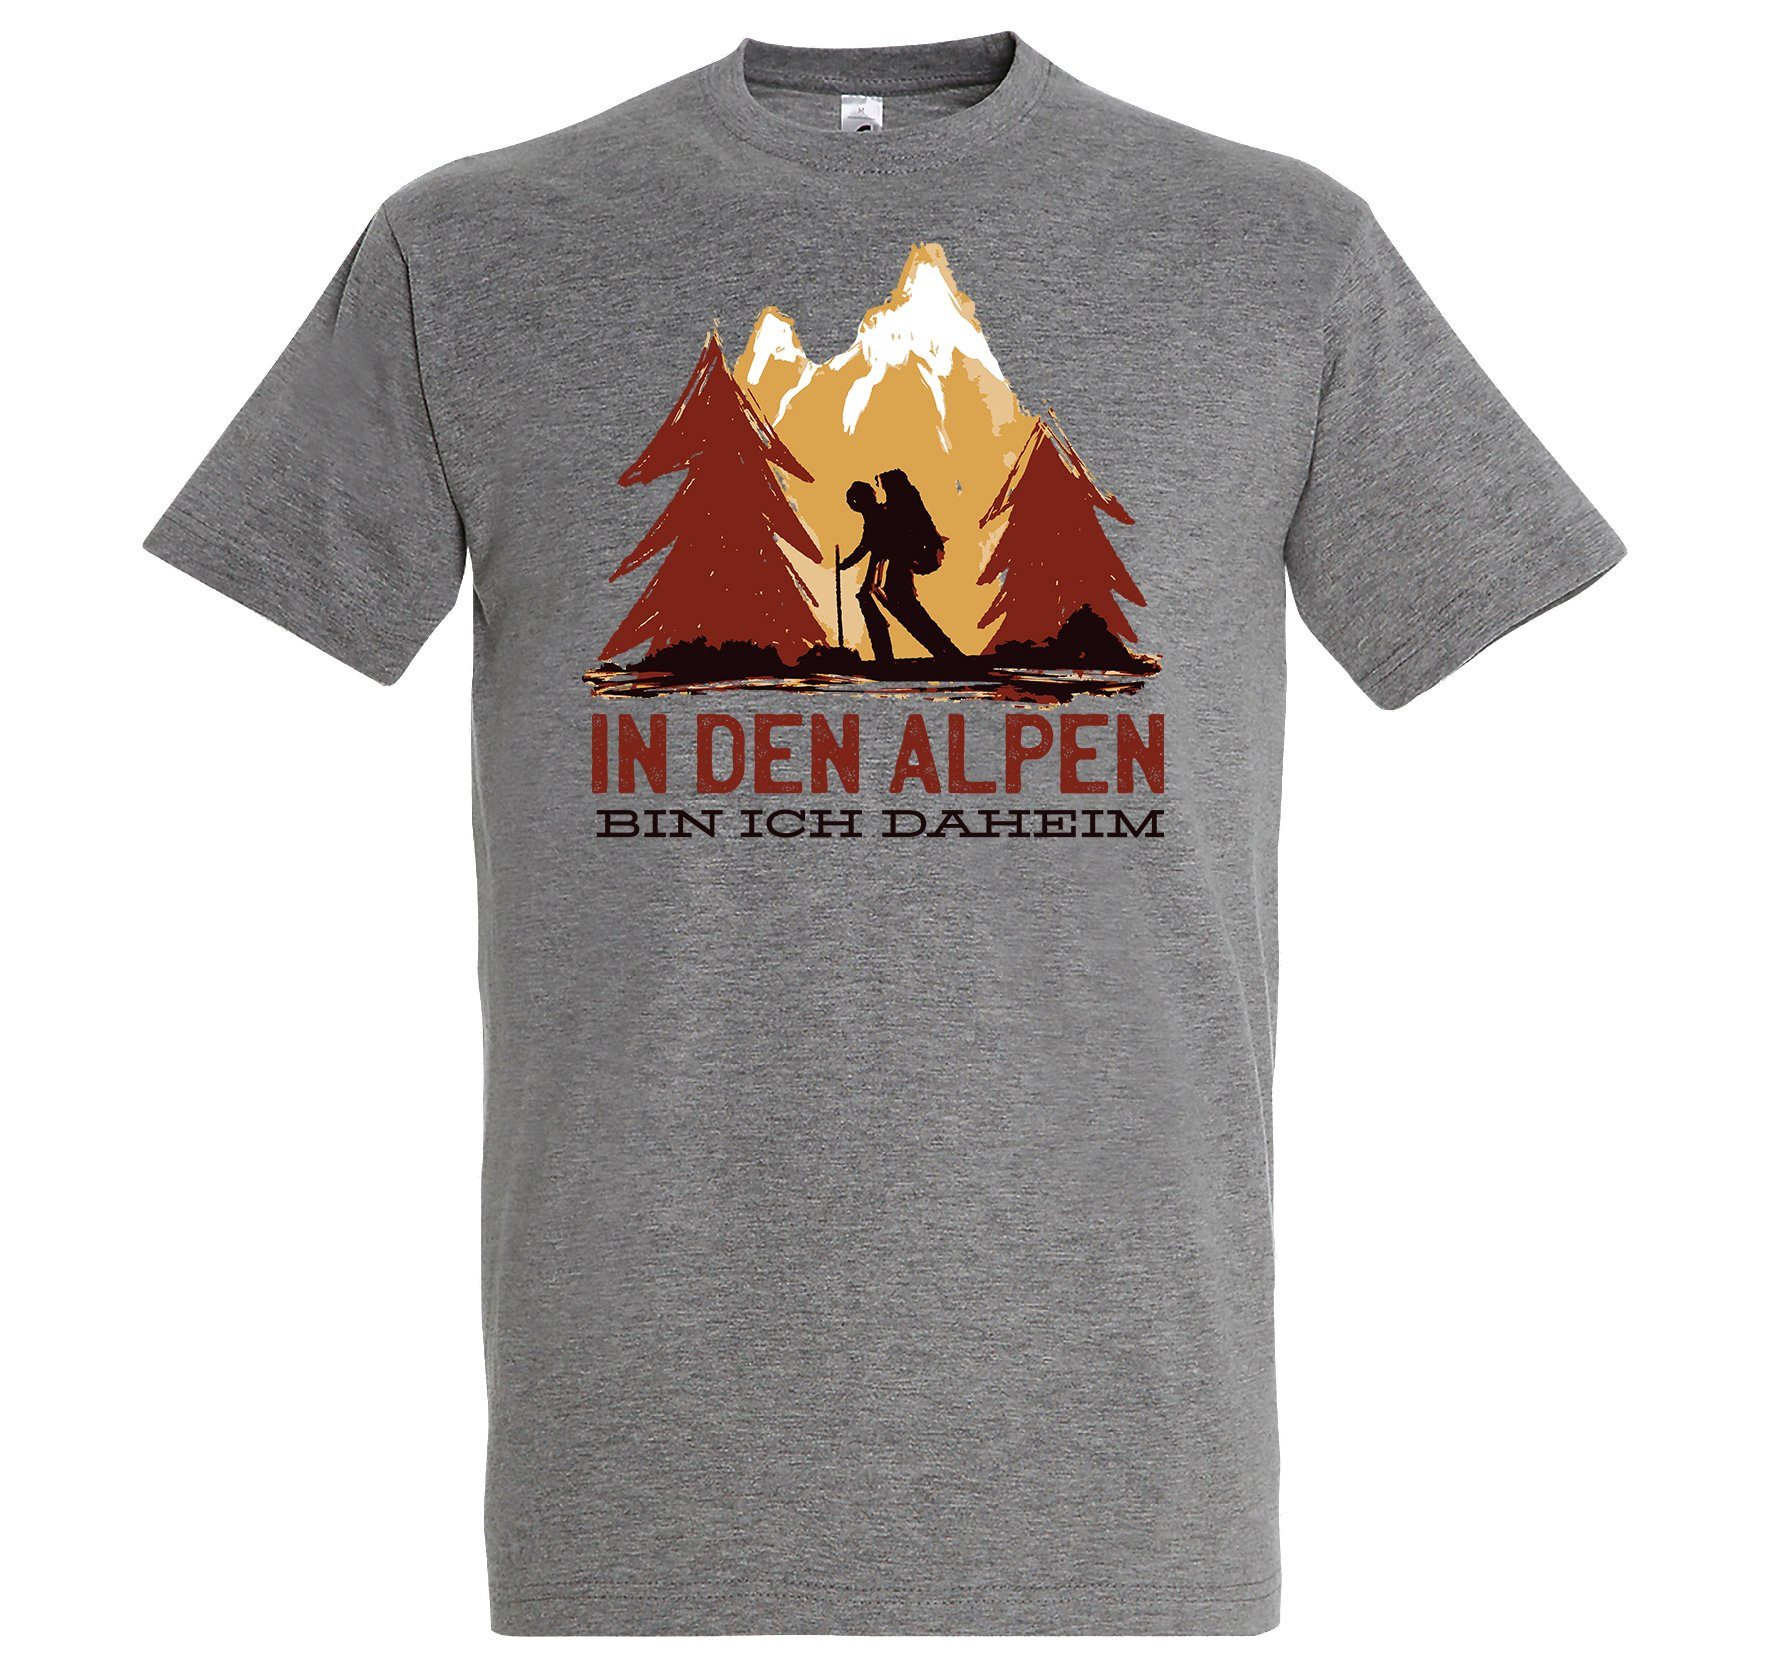 Bin Shirt Den Weiß Alpen Designz Herren Frontprint trendigem T-Shirt Daheim Ich Youth In mit